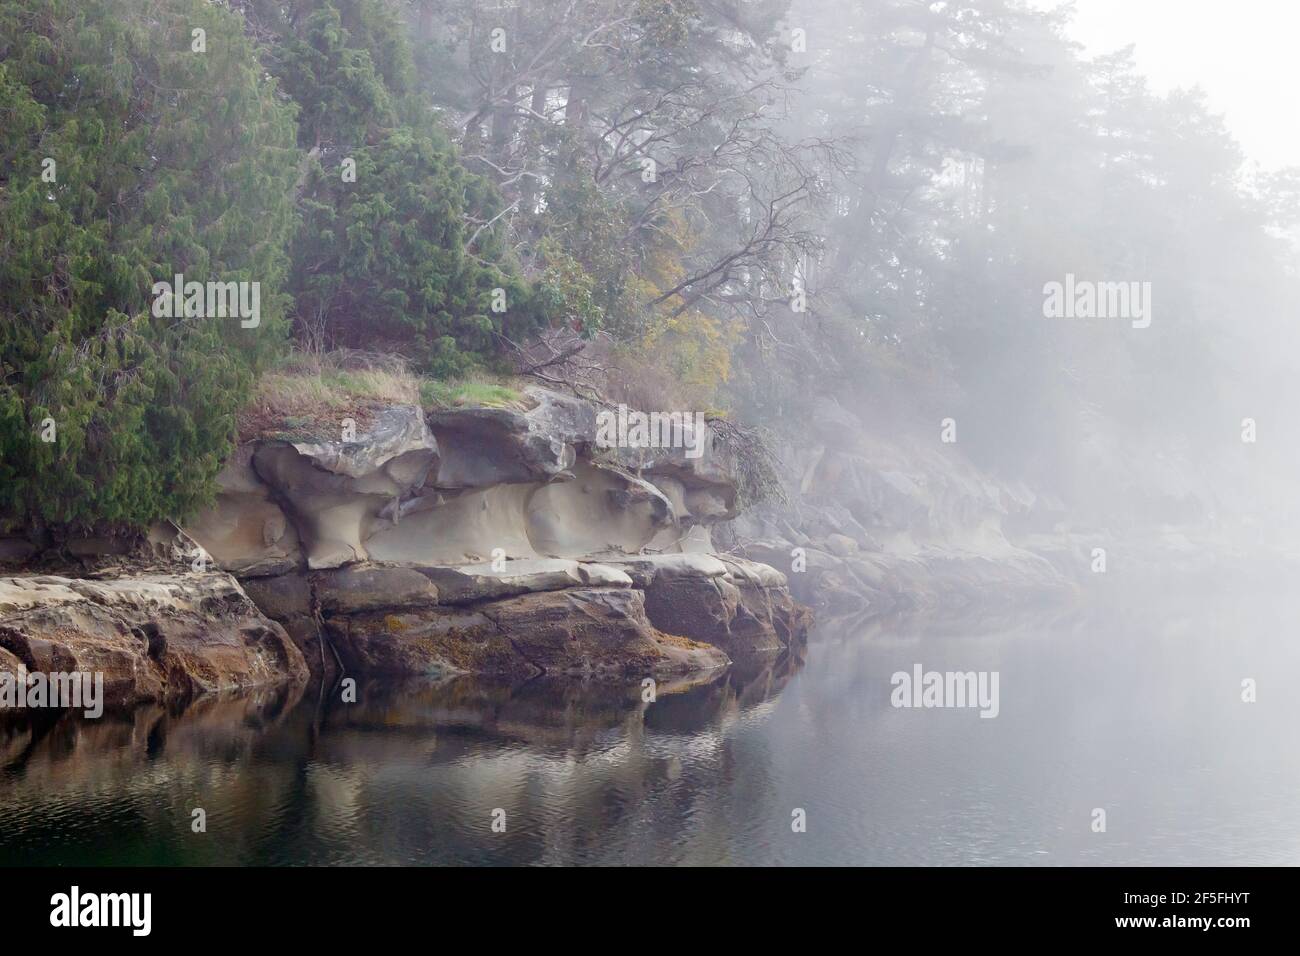 Le brouillard couvre un rivage en grès, ce qui donne un air de mystère à mesure que les détails de la roche et des arbres au loin sont obscurcis (octobre, Colombie-Britannique). Banque D'Images